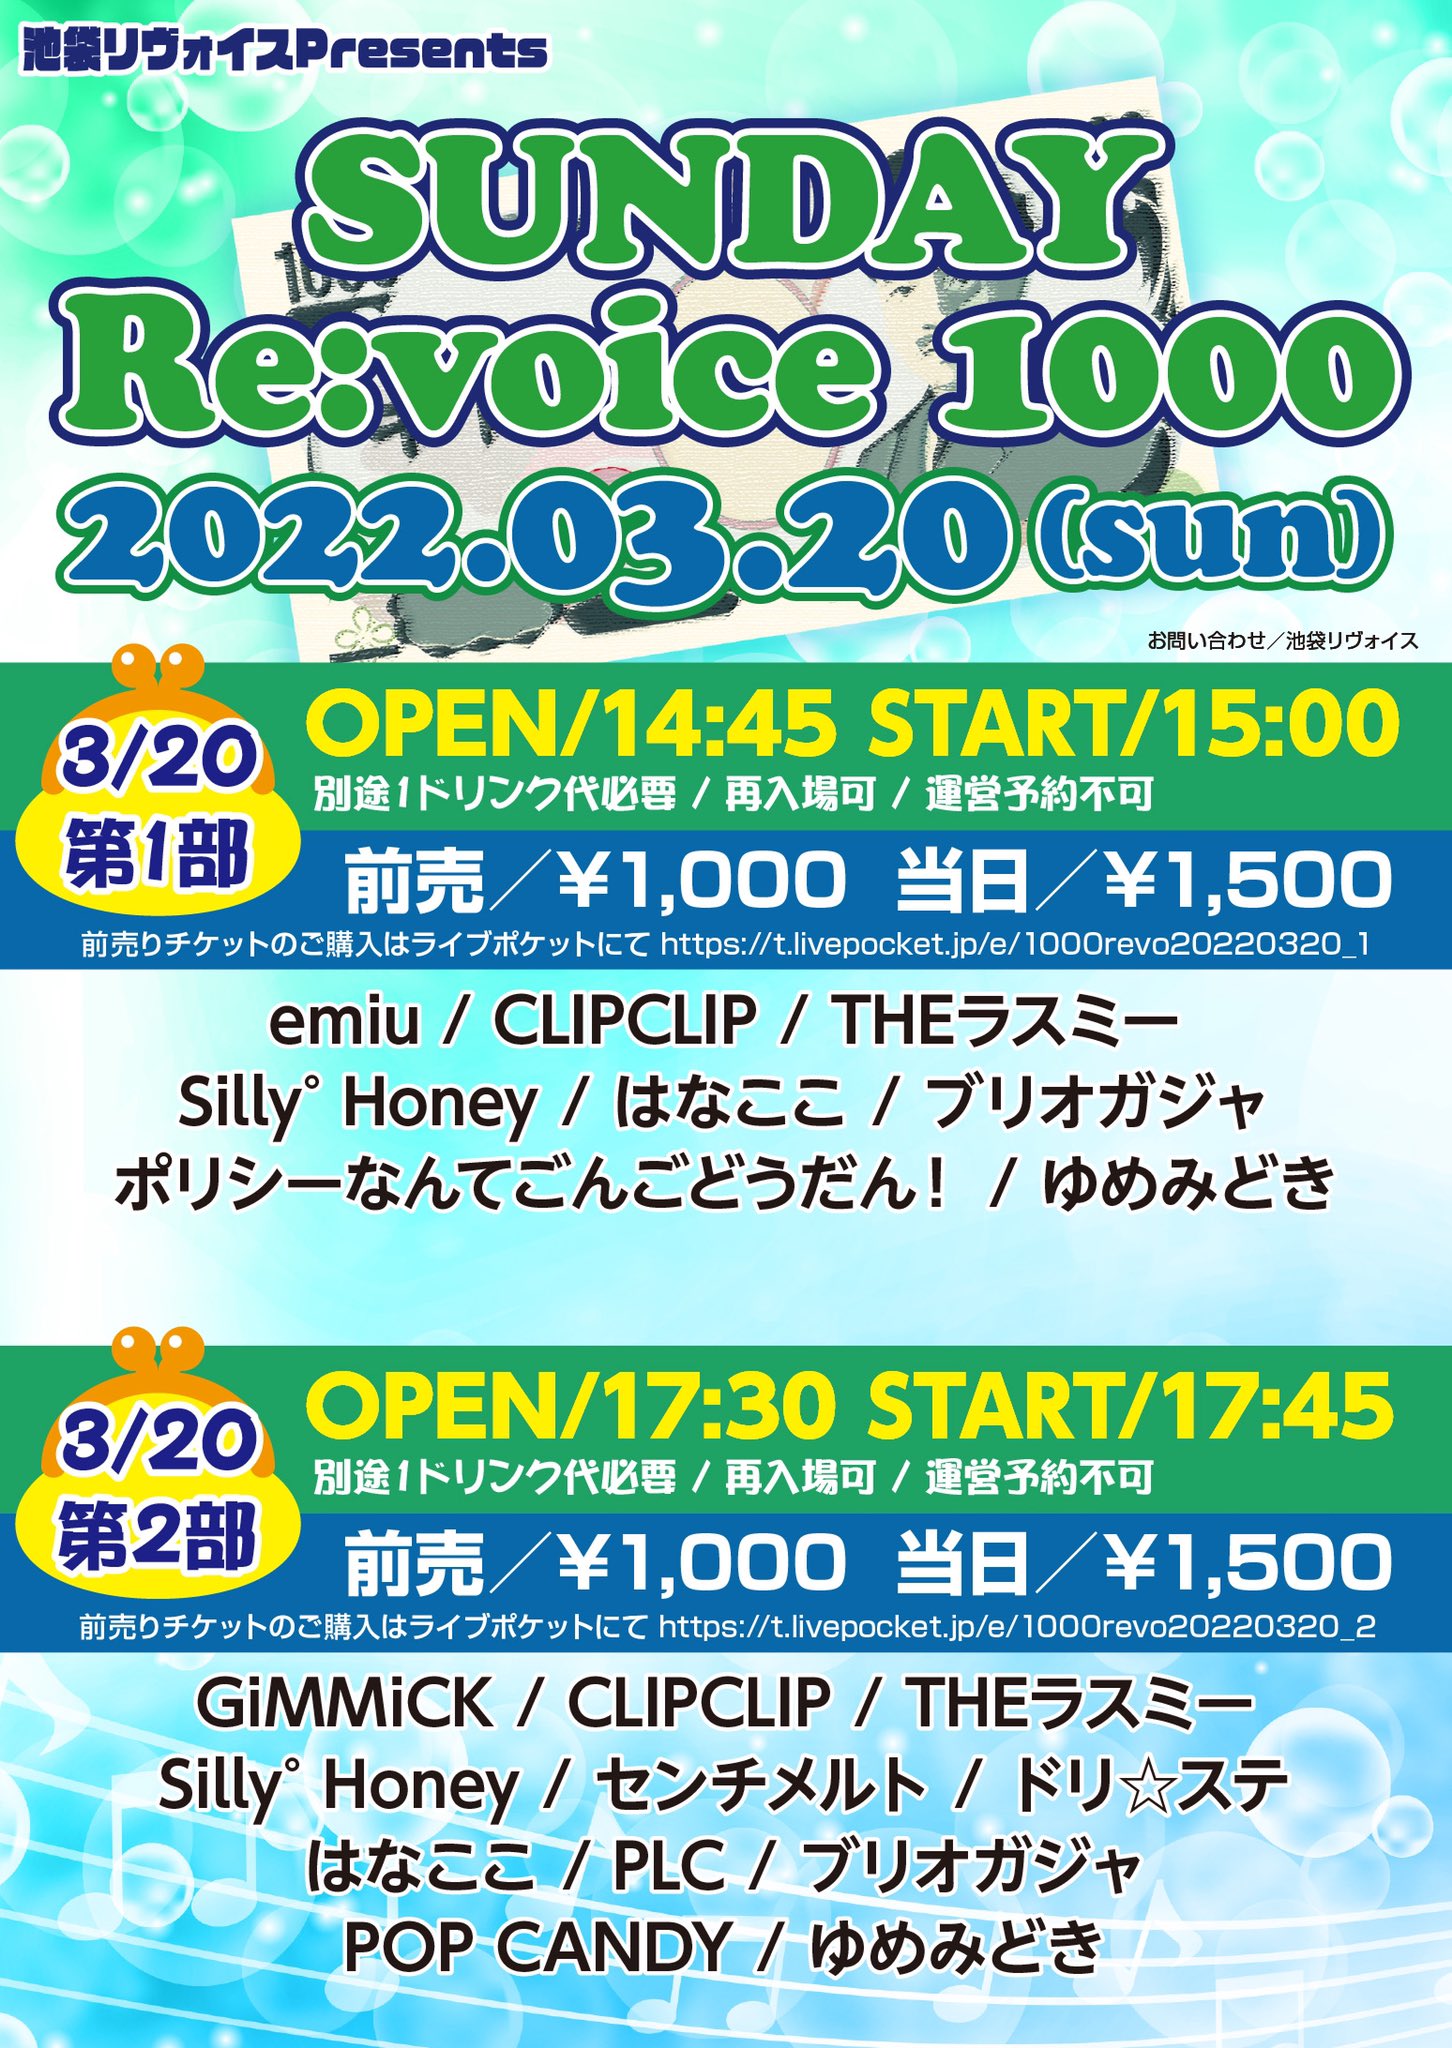 【第一部】SUNDAY Re:voice 1000